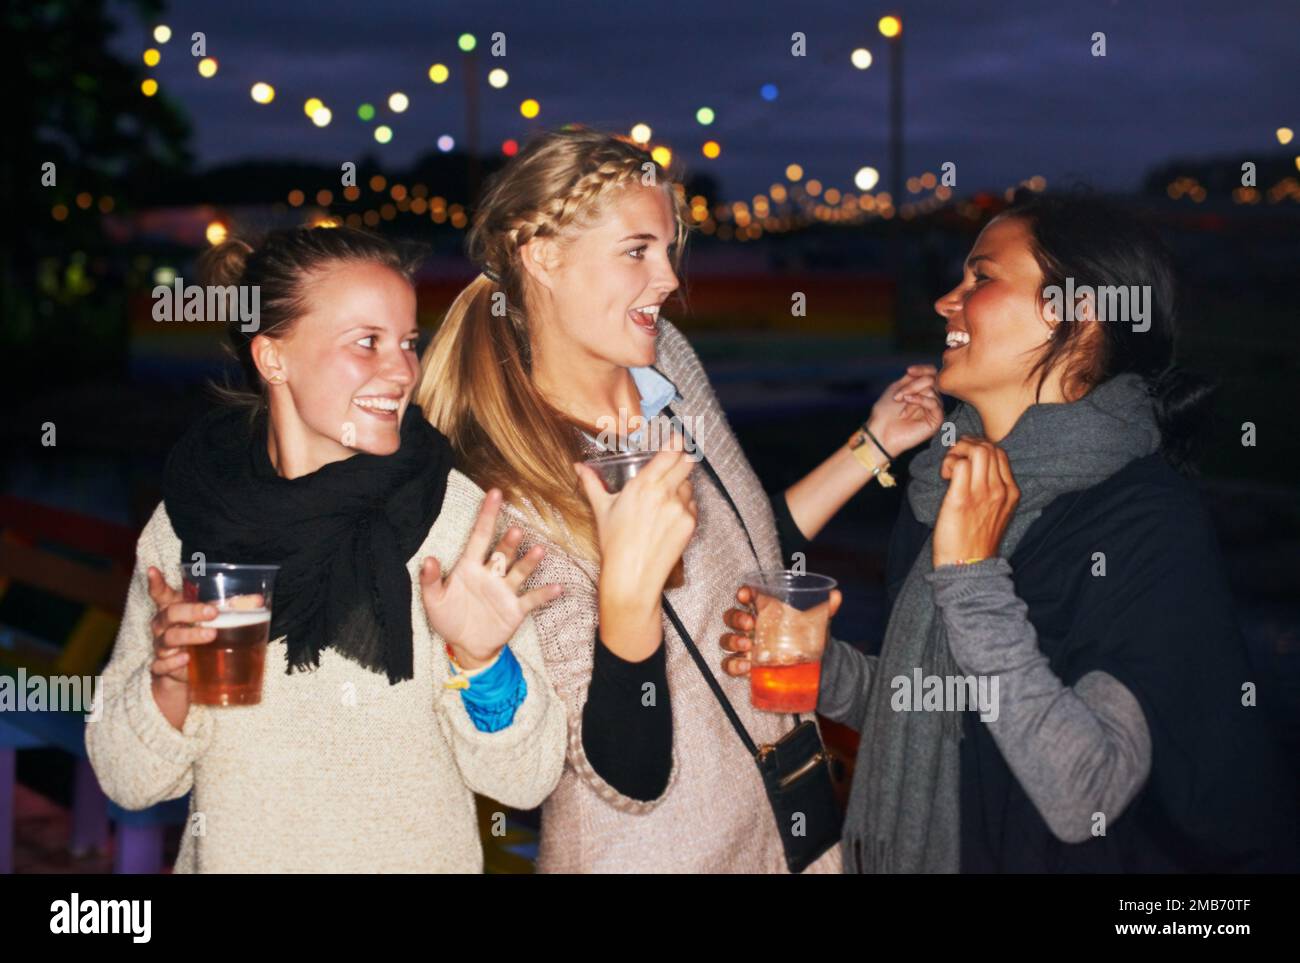 Festa sotto le stelle. tre amici che parlano e bevono di notte in un festival di musica all'aperto. Foto Stock